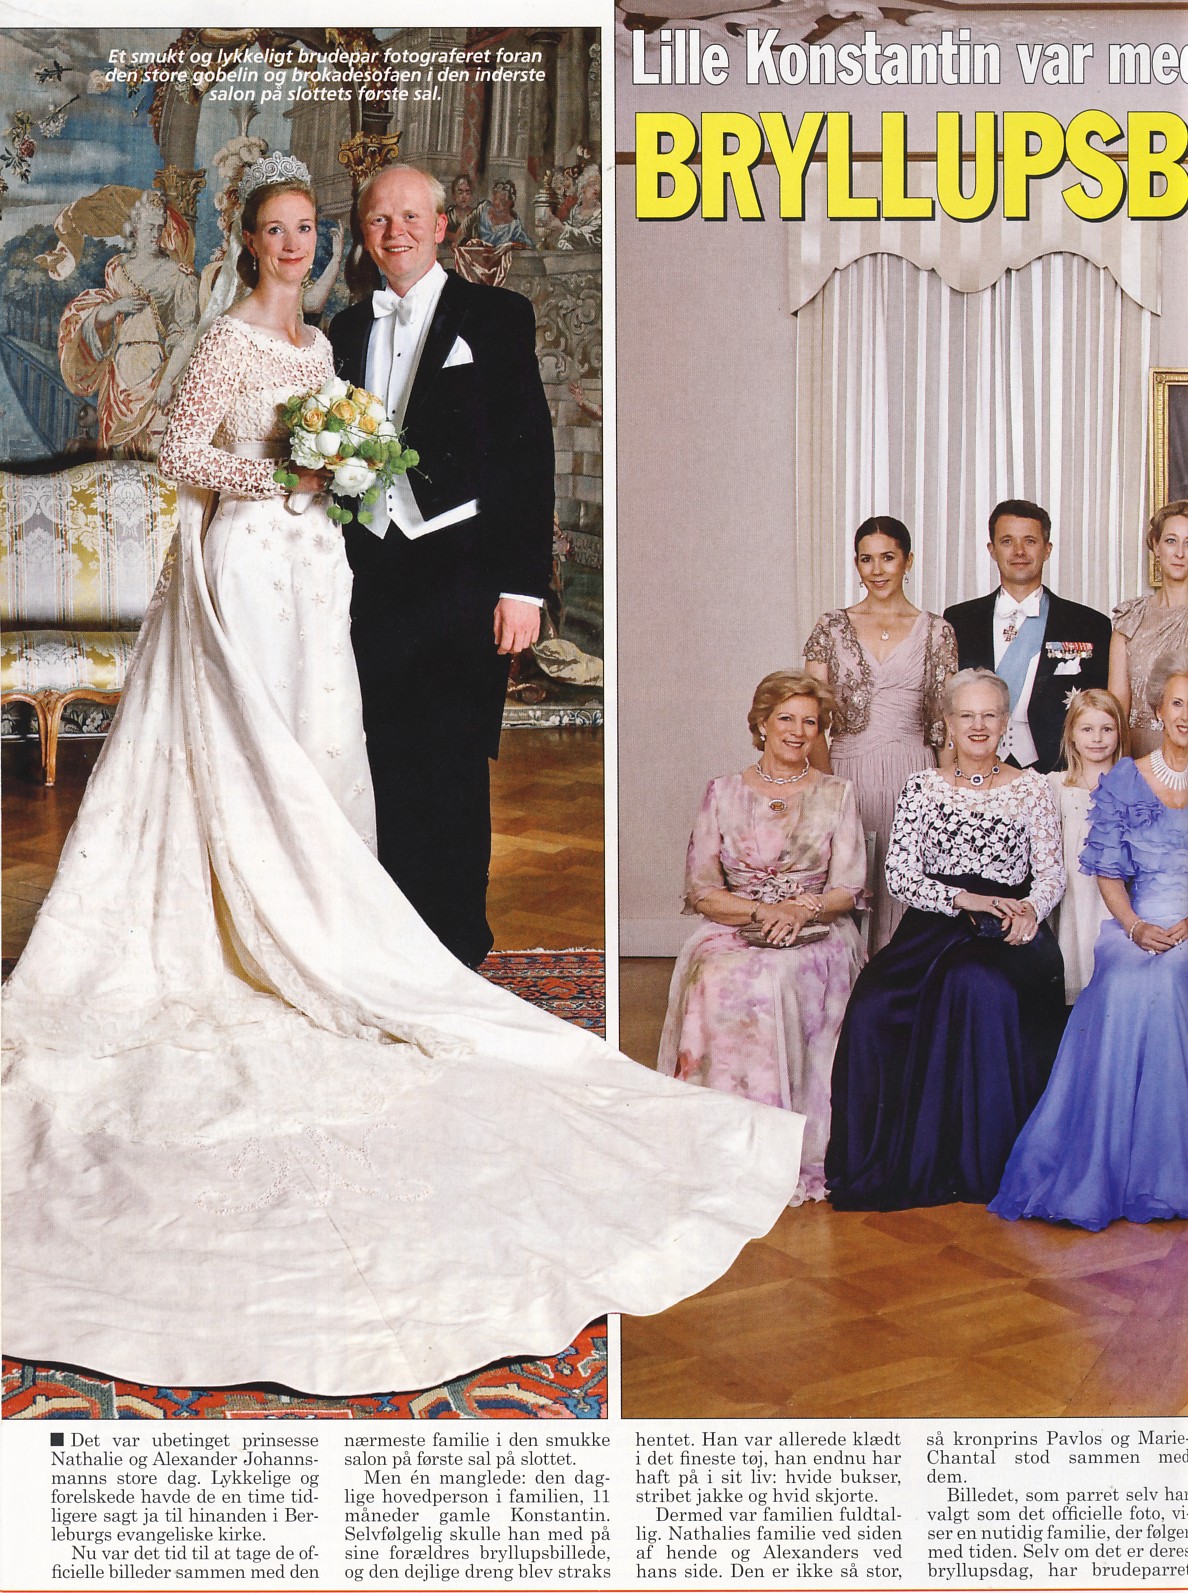 Daddy Bløde fødder kassette Danish Royal Media Watch: Billed Bladet #25: Princess Nathalie's Wedding